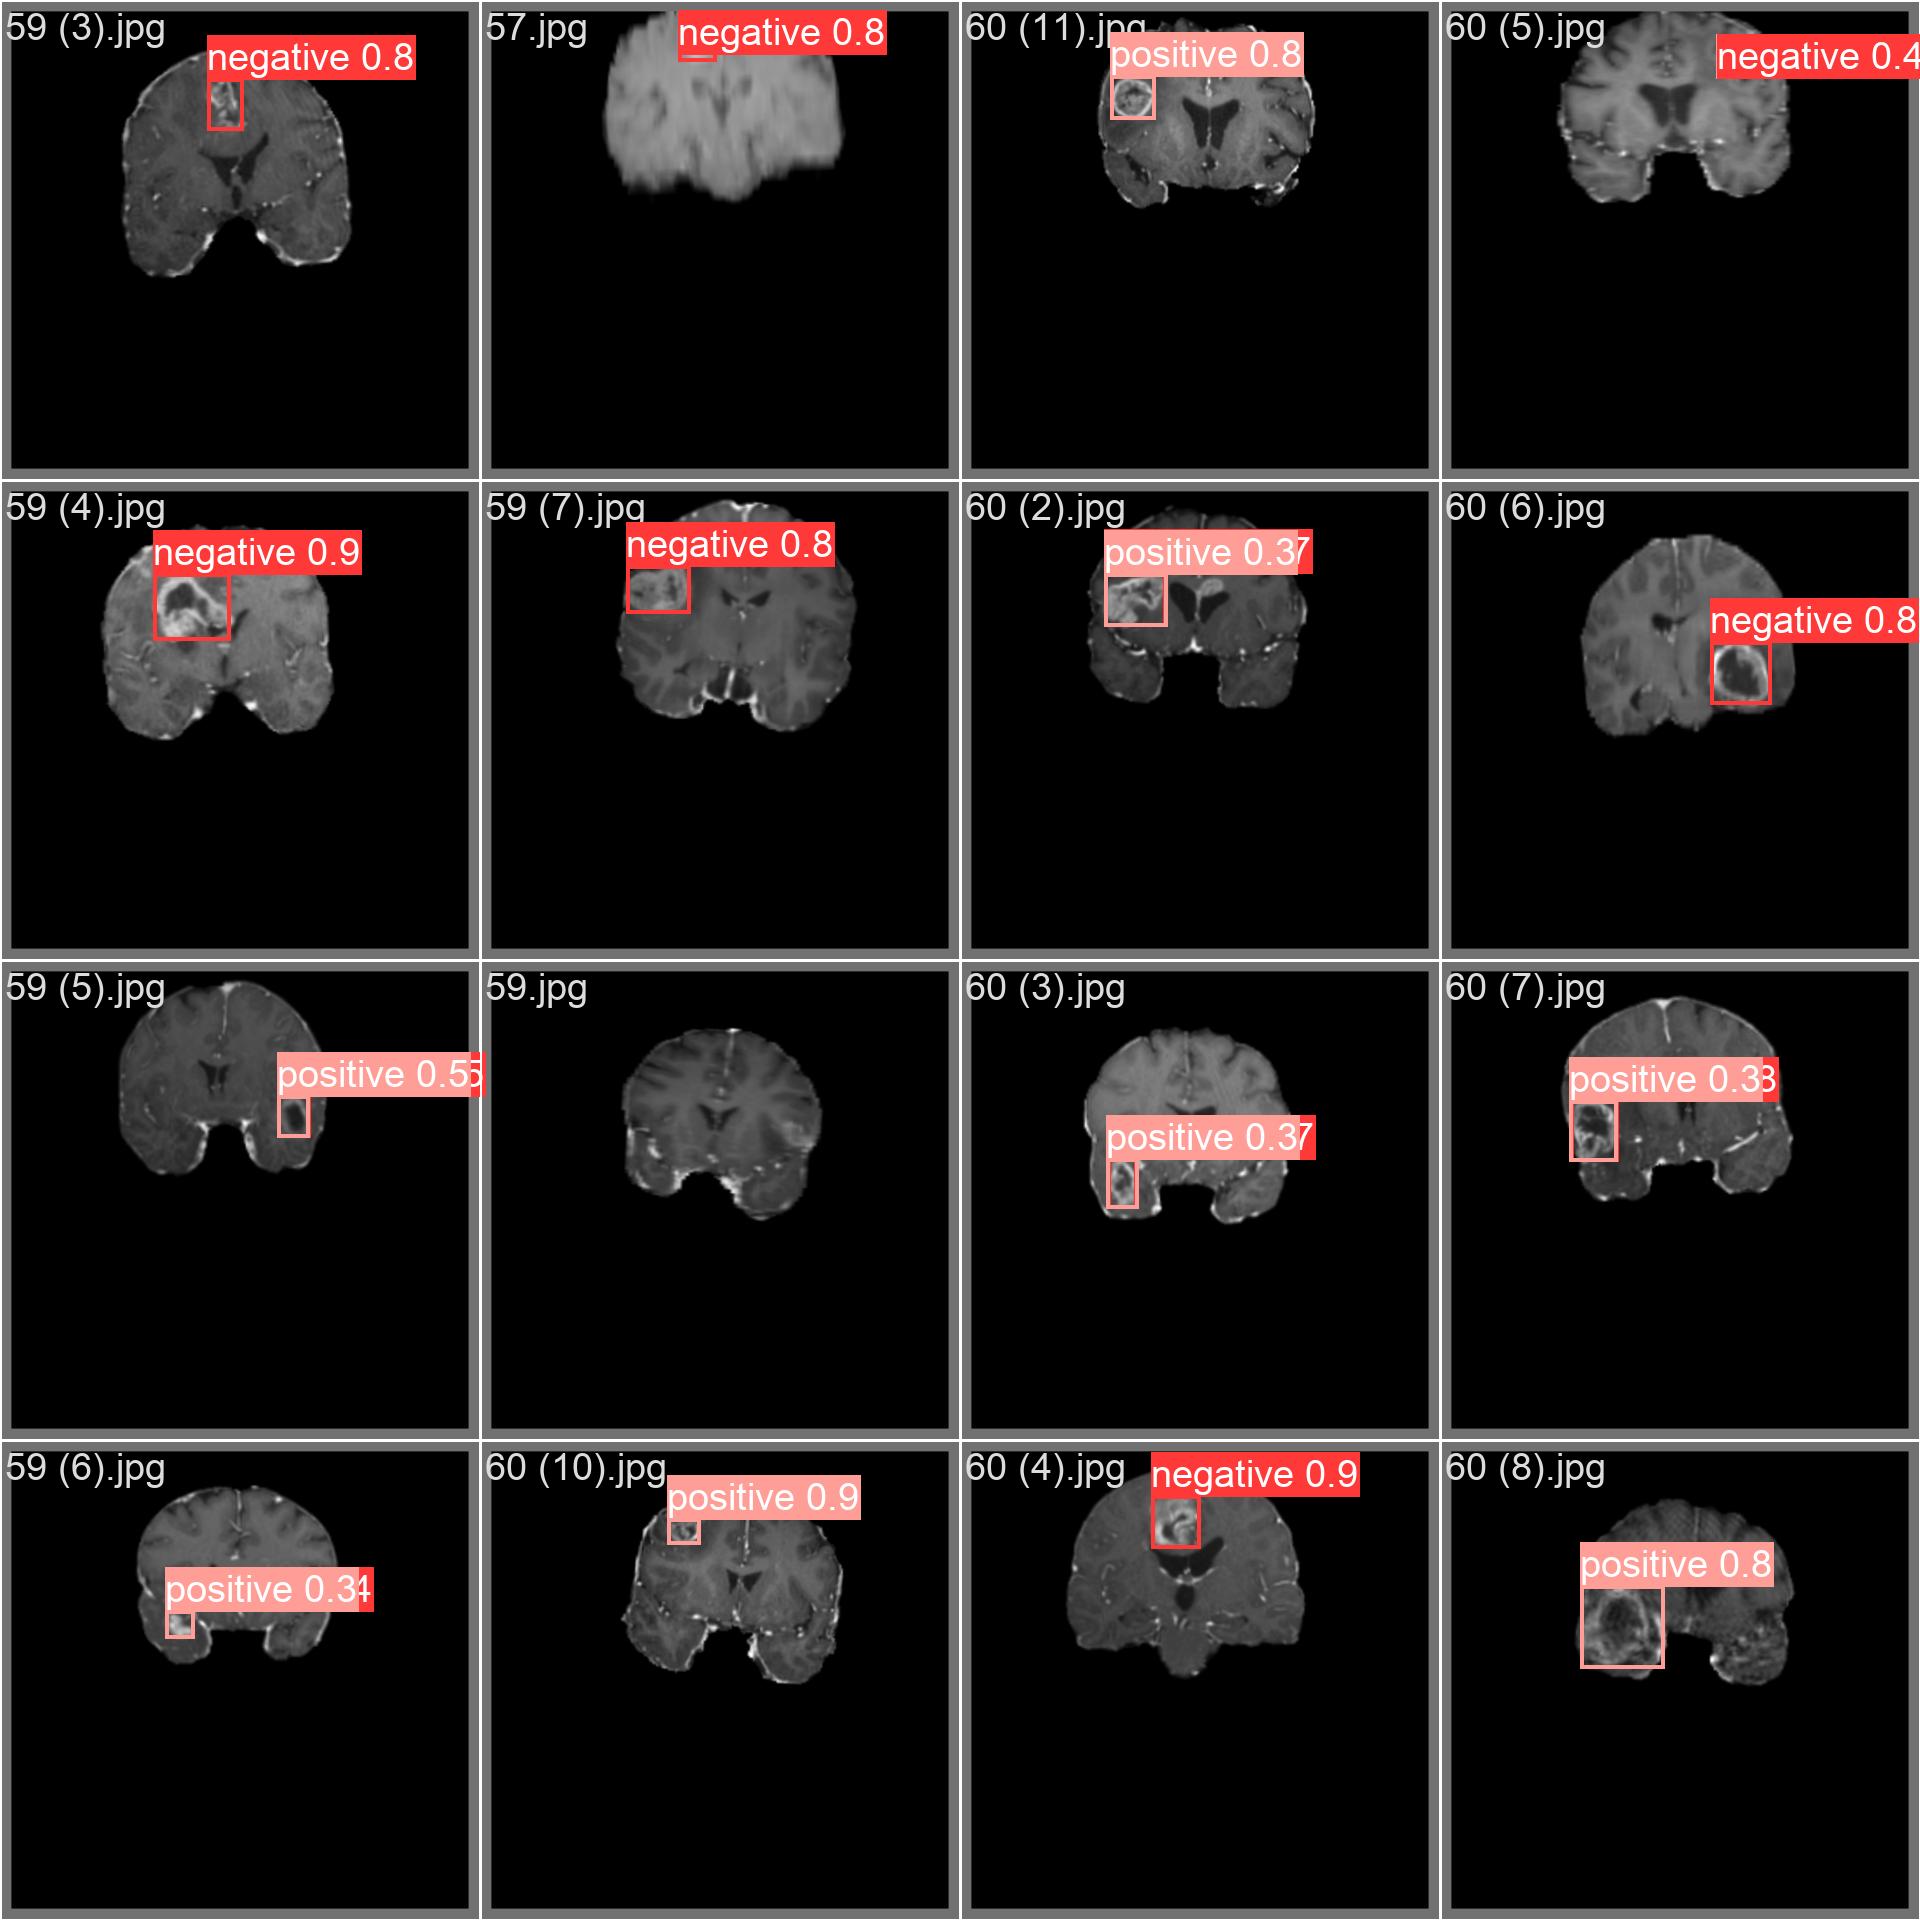 Imagen de muestra del conjunto de datos sobre tumores cerebrales